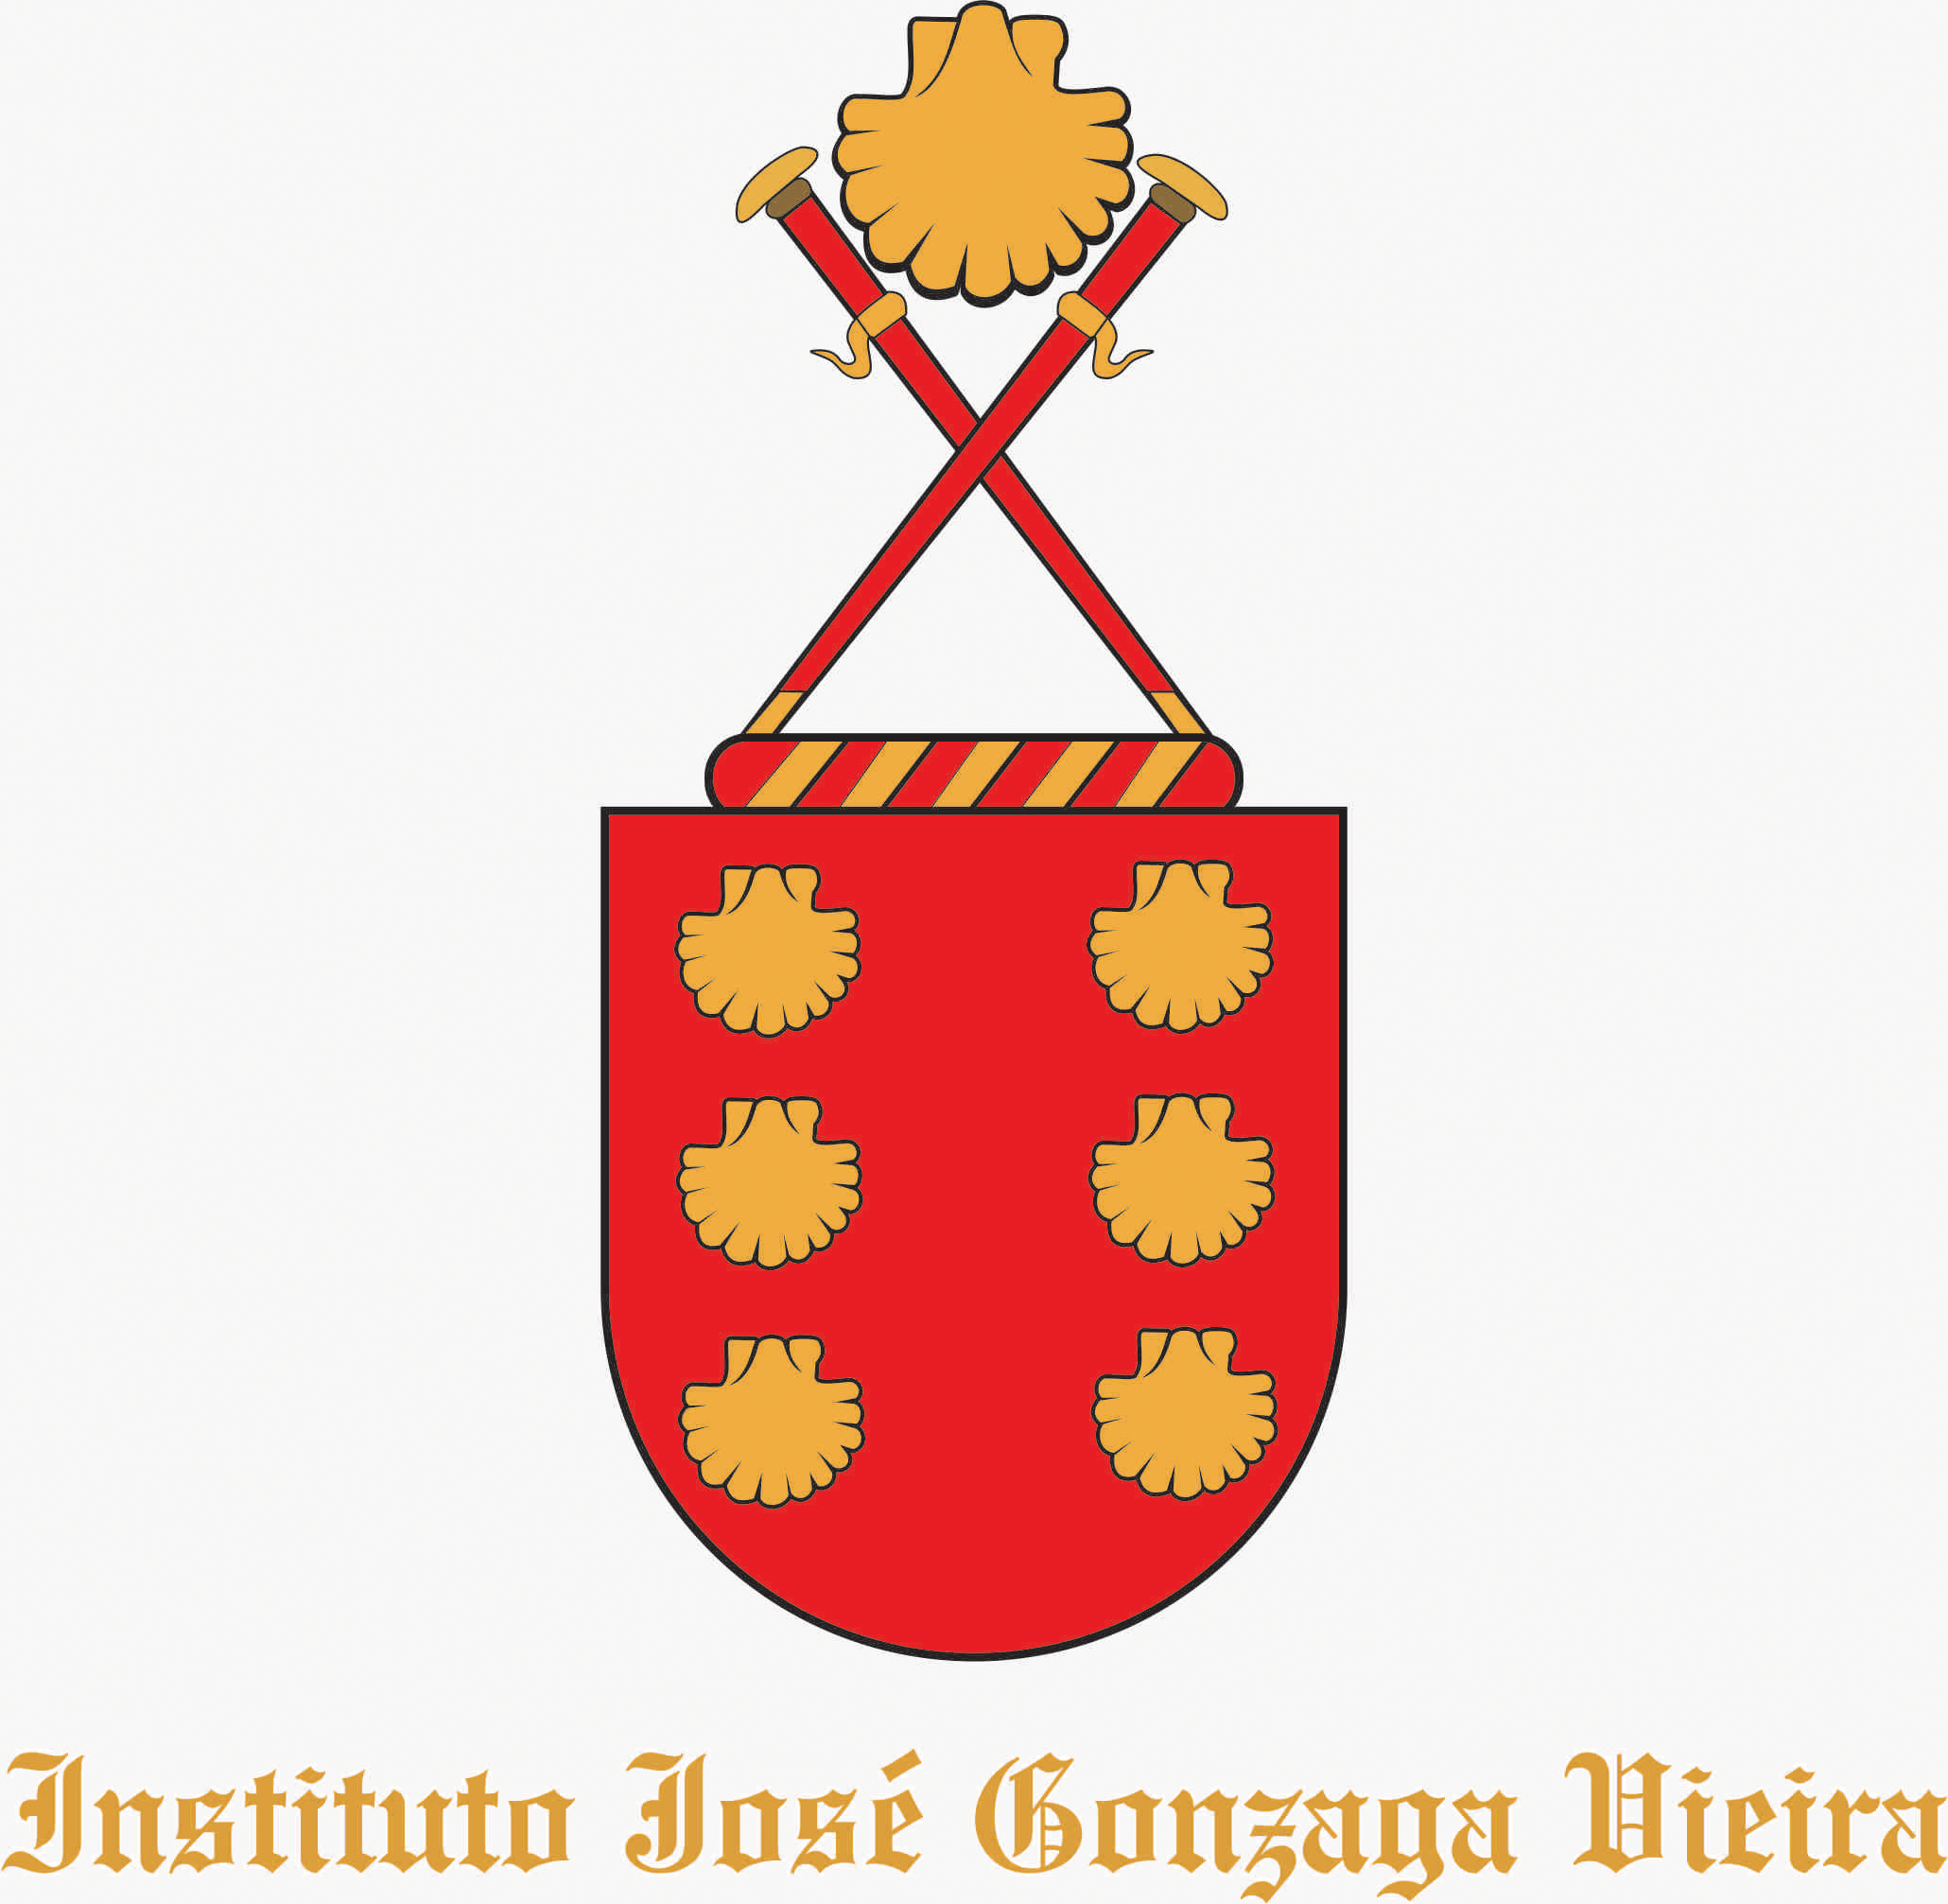 Instituto José Gonzaga